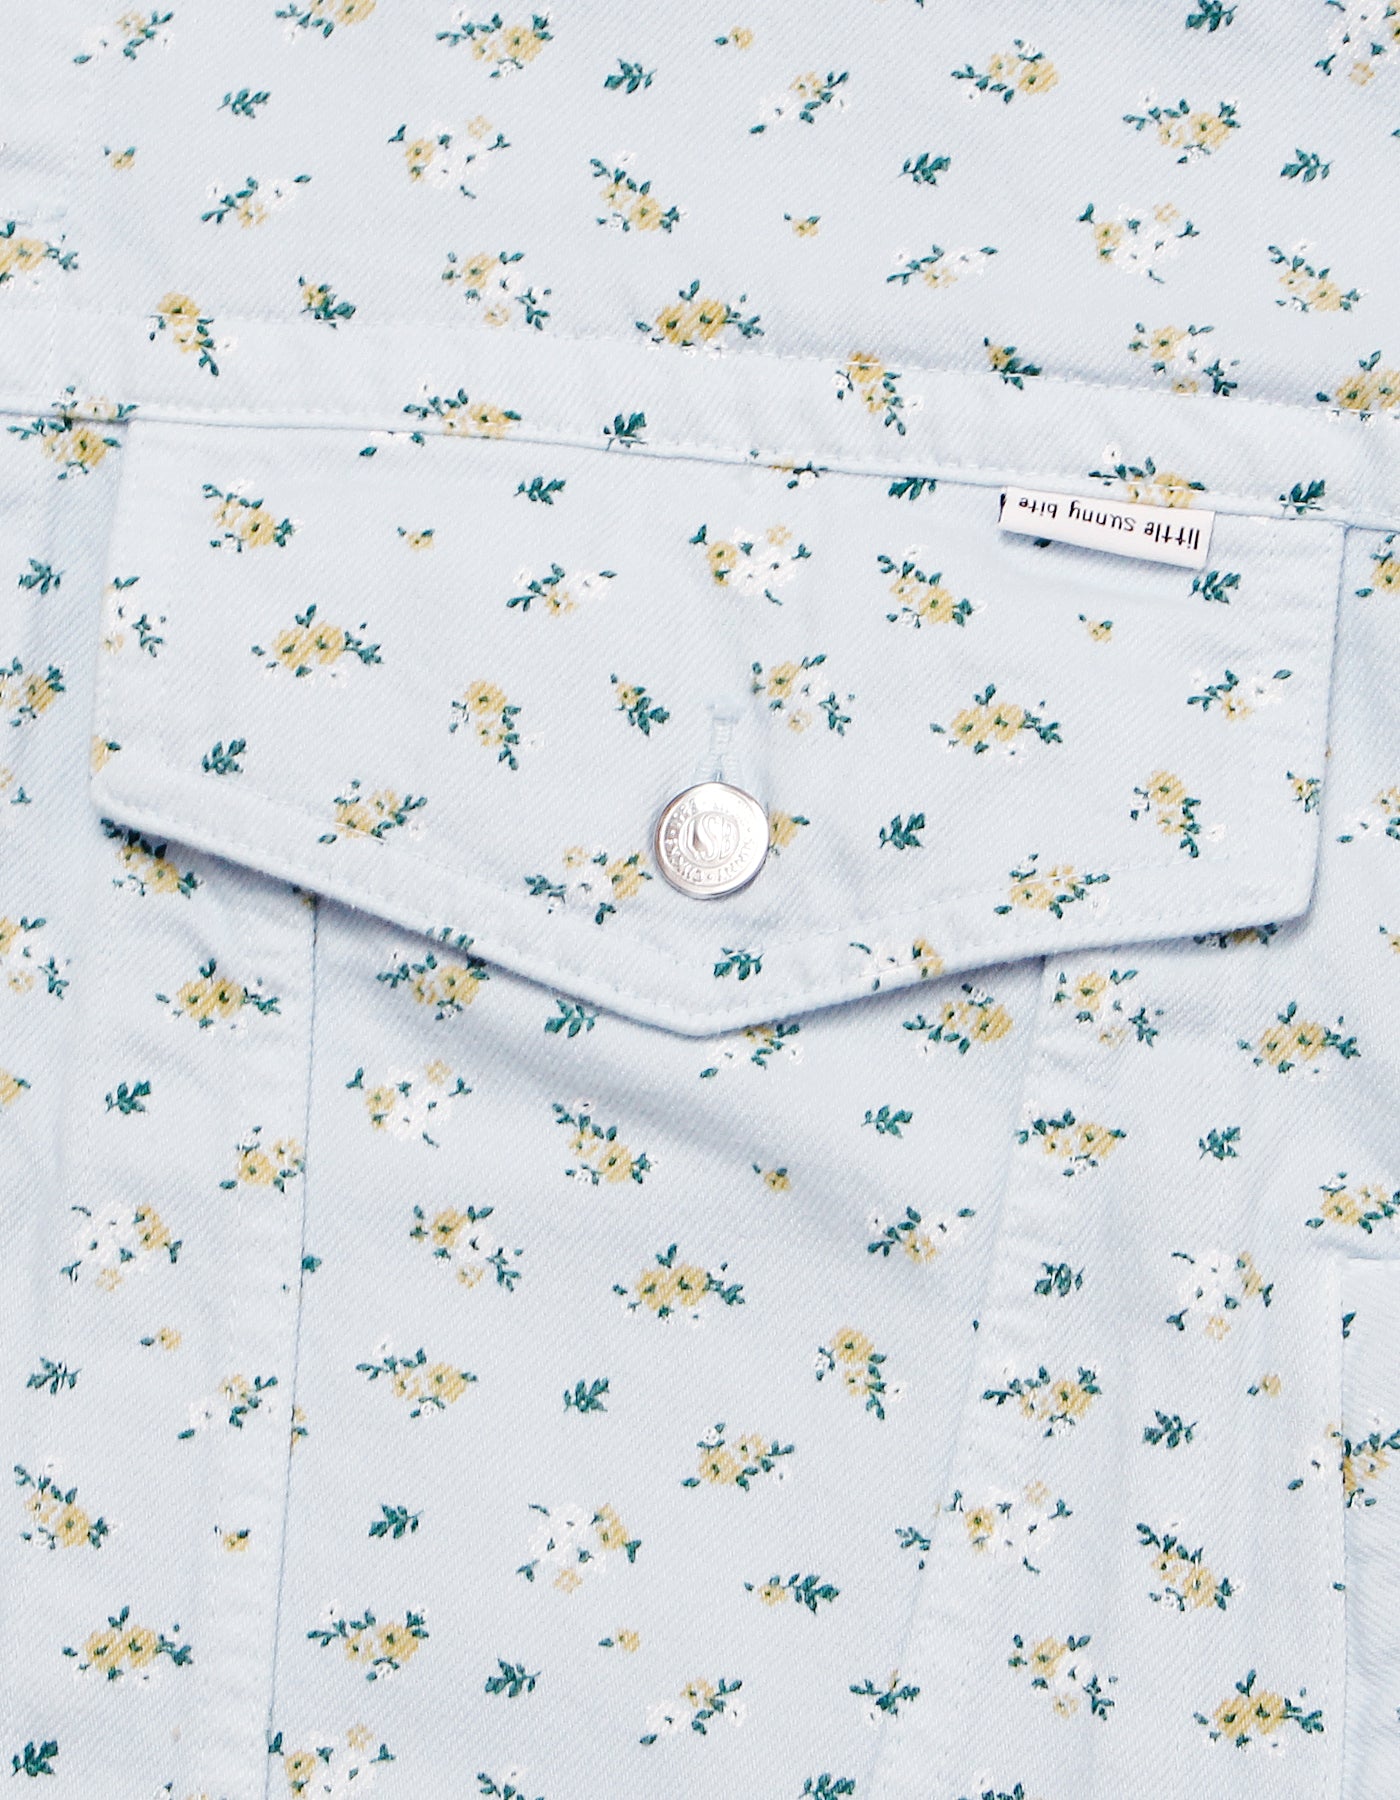 little sunny bite (リトルサニーバイト) Flower print denim jacket